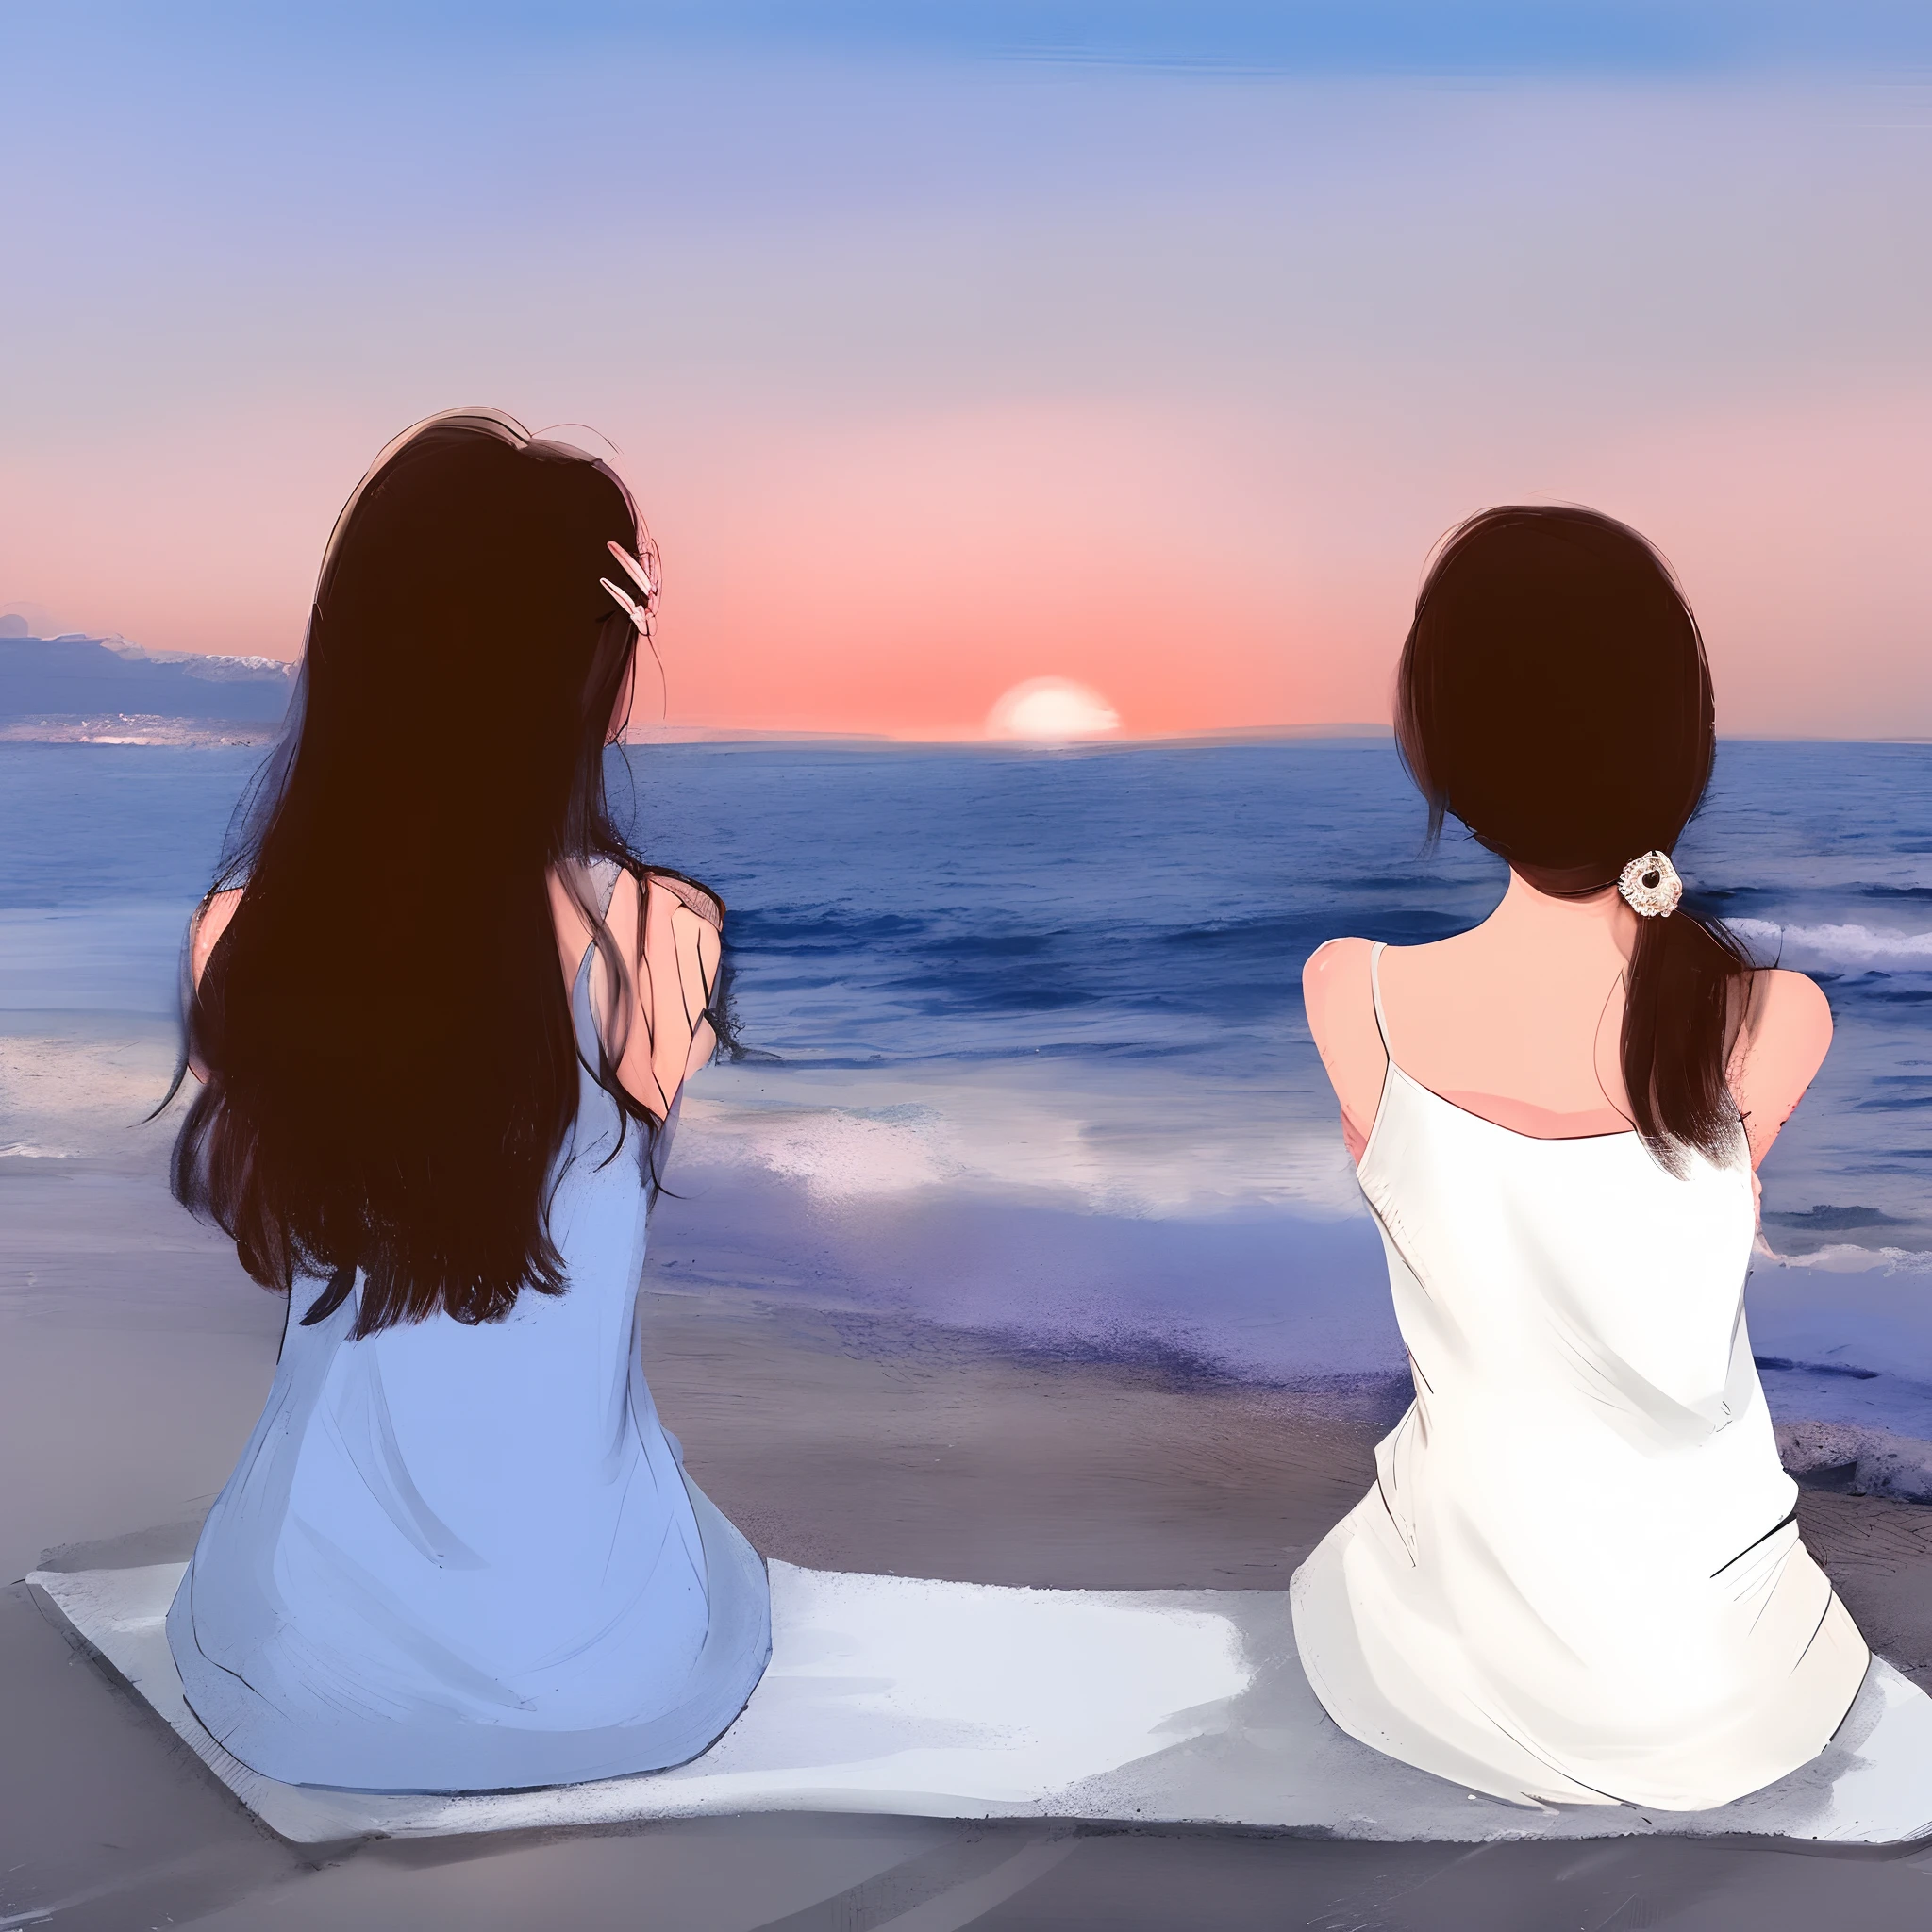 Two women sitting on the beach 夕日を眺める, 友人の美しい絵画, 沈む太陽とともに, 夕日を眺める, 夕日を眺める. 日本のマンガ, 夕暮れのビーチで, 夕日のビーチで, 夕日を眺める, 沈む太陽とともに, ビーチに座る, 二人の女の子, 夕暮れのビーチで, デジタルアート画像, 日没時のビーチで